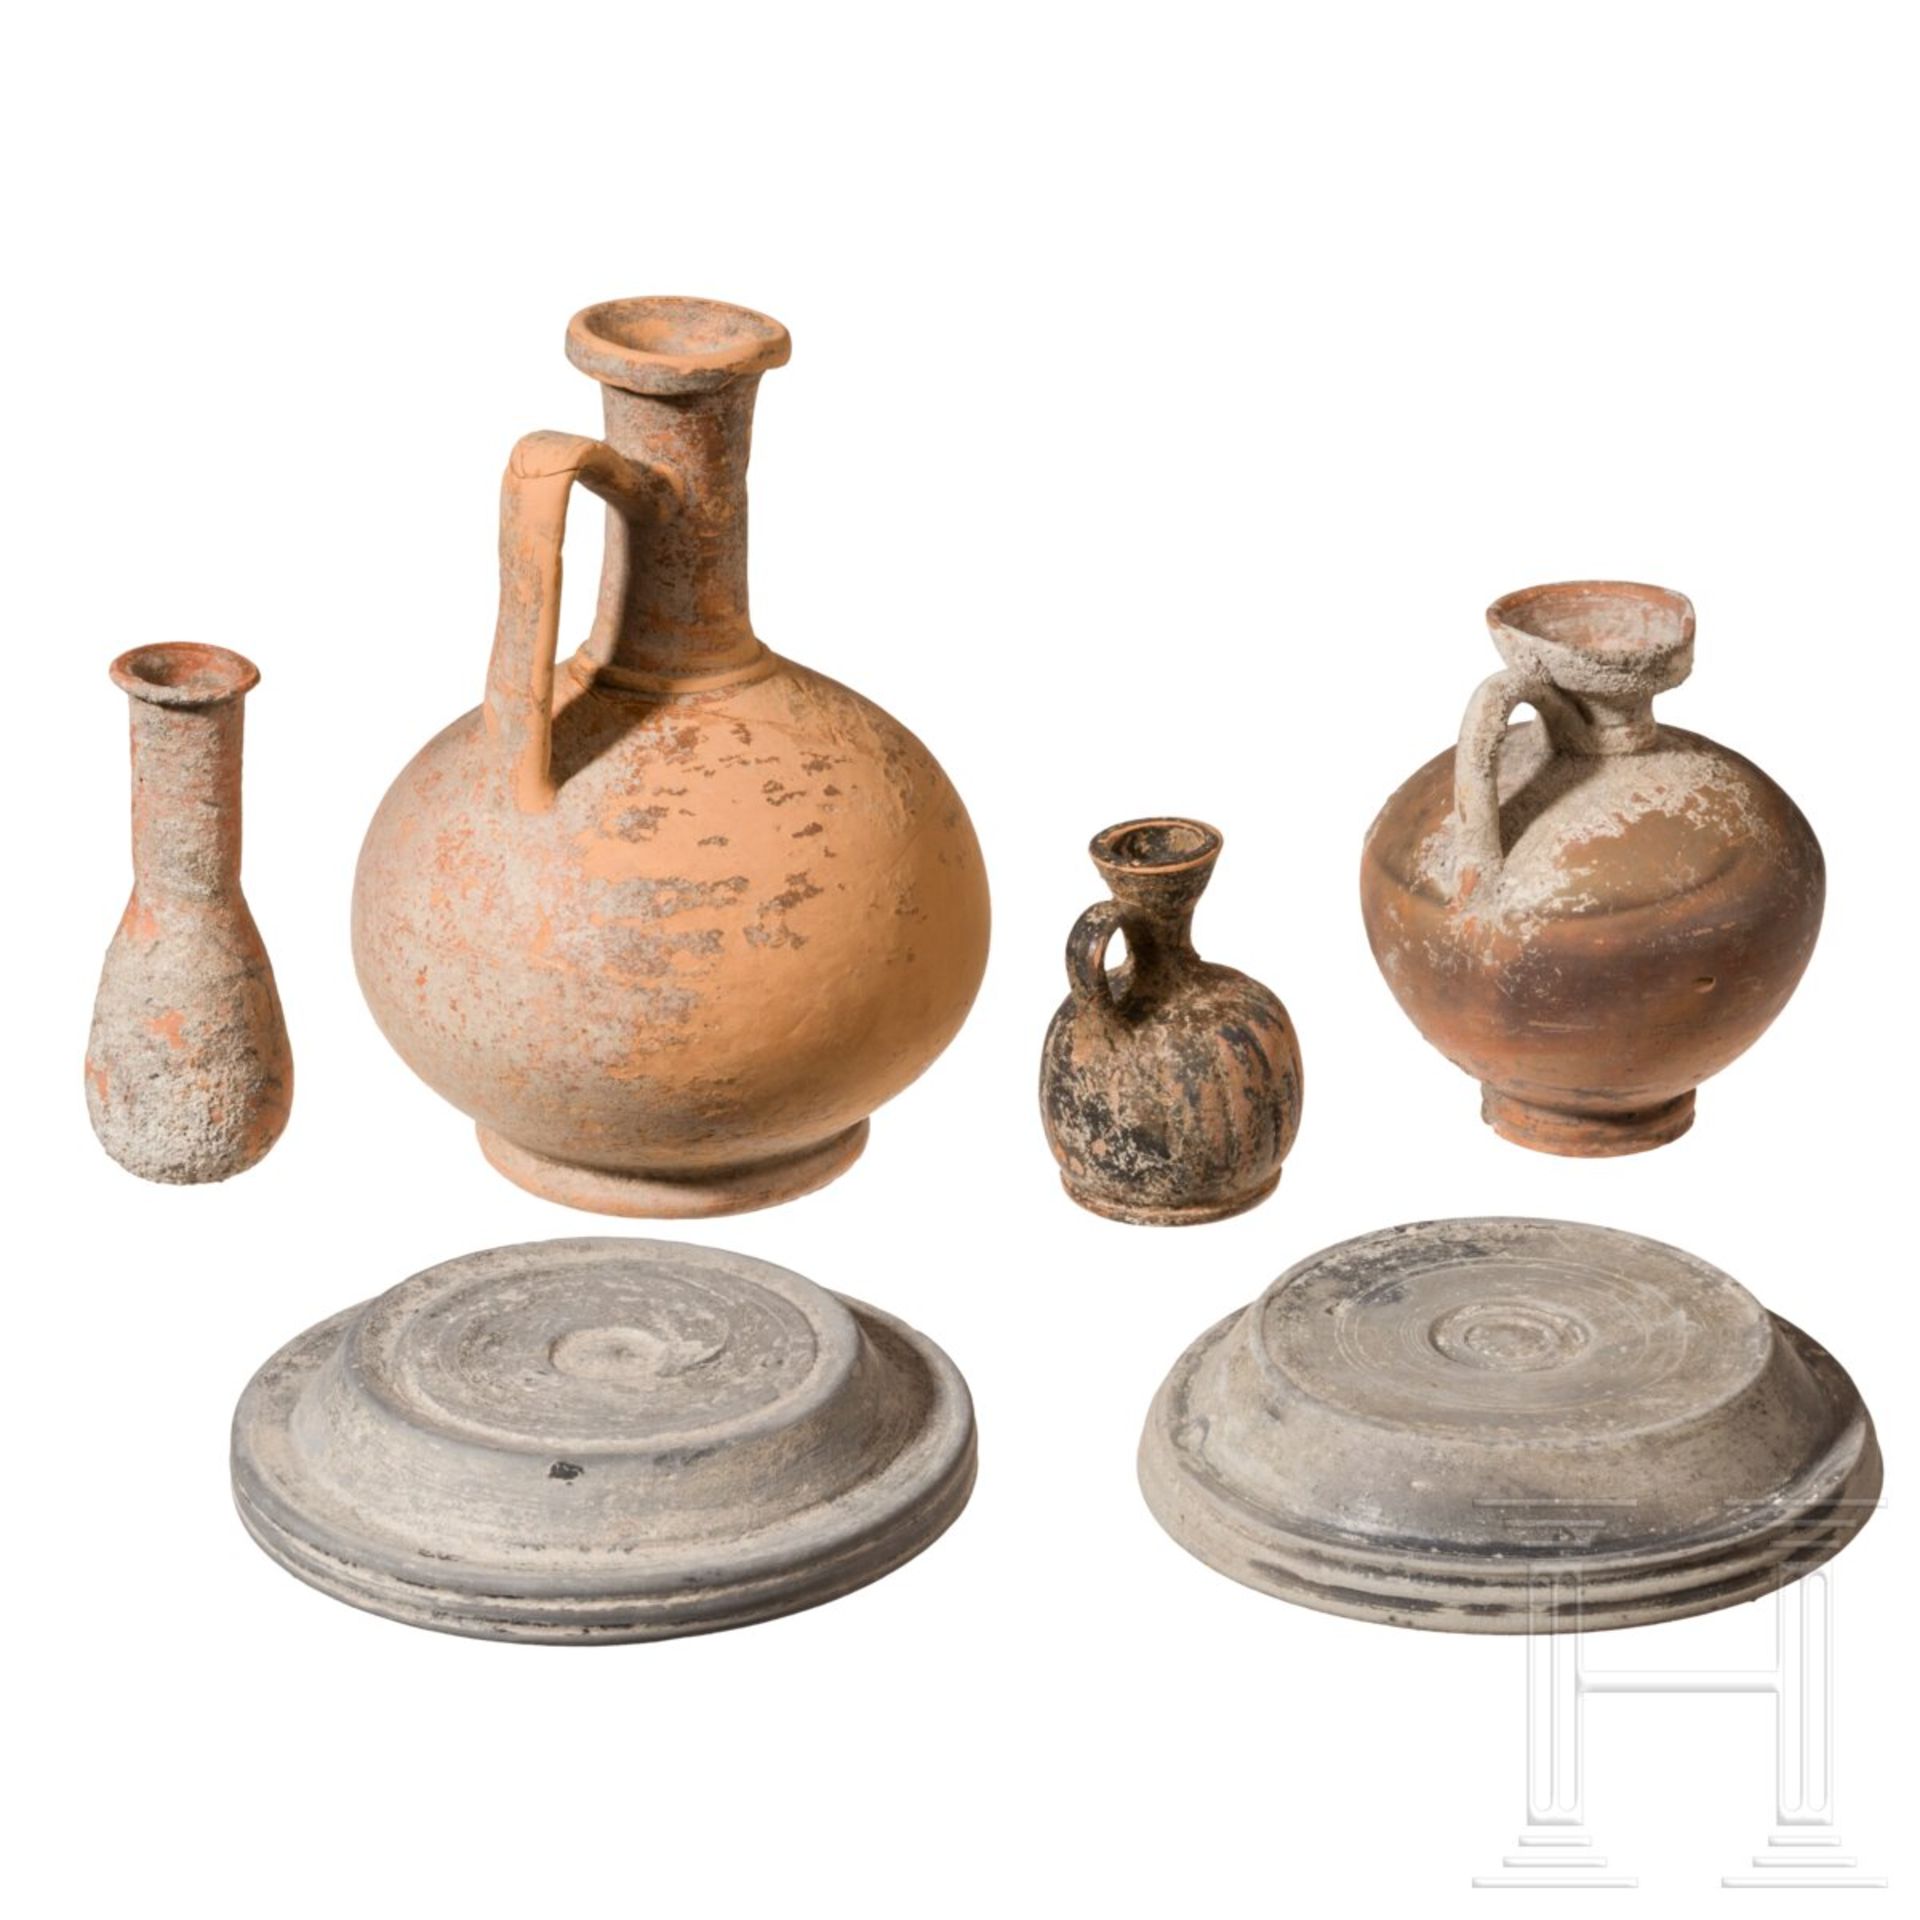 Sechs antike Keramiken, meist römisch, 3. Jhdt. v. - 3. Jhdt. n. Chr. - Image 2 of 2